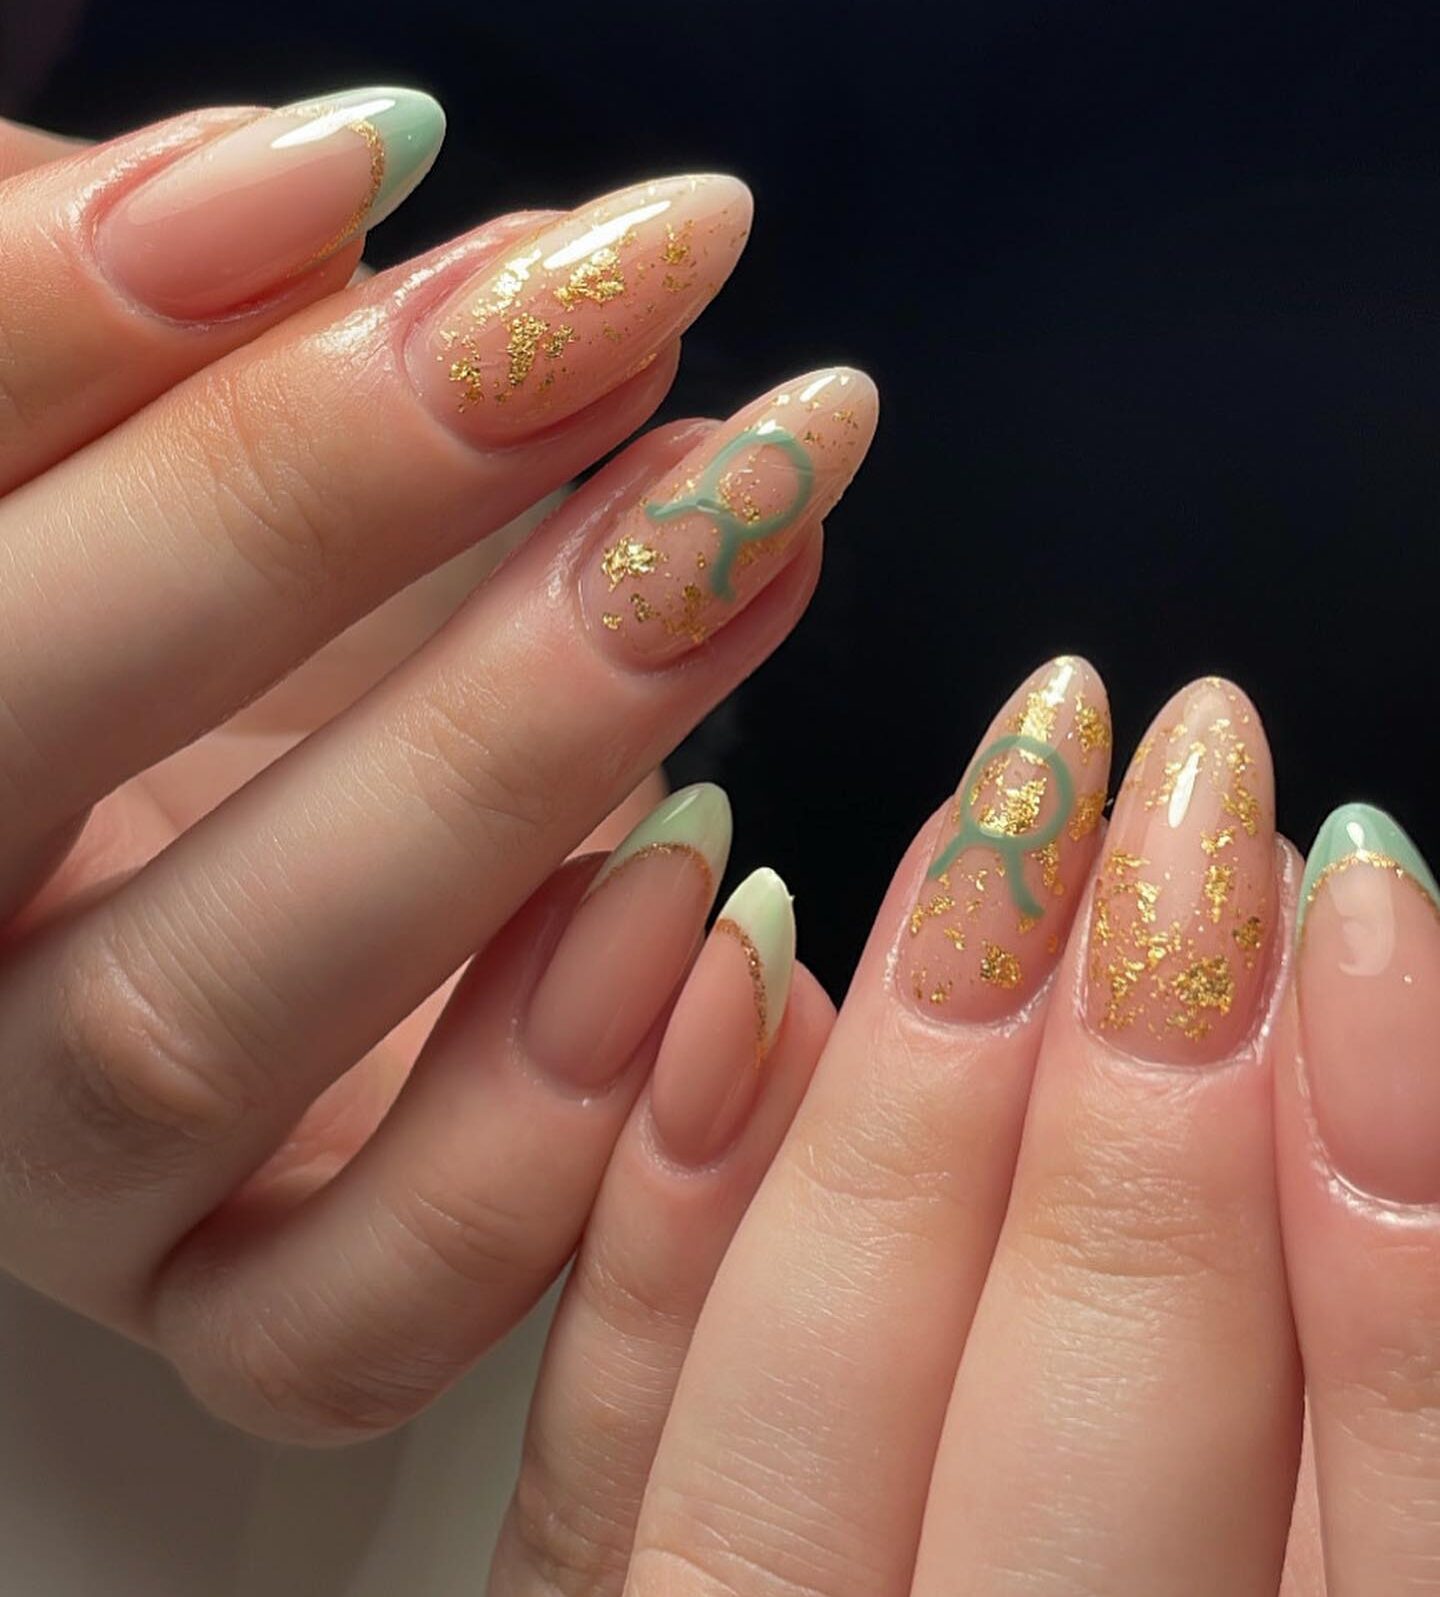 Puntas francesas de color verde pálido, detalles en láminas doradas y diseños de uñas con el signo de Tauro en uñas largas color almendra